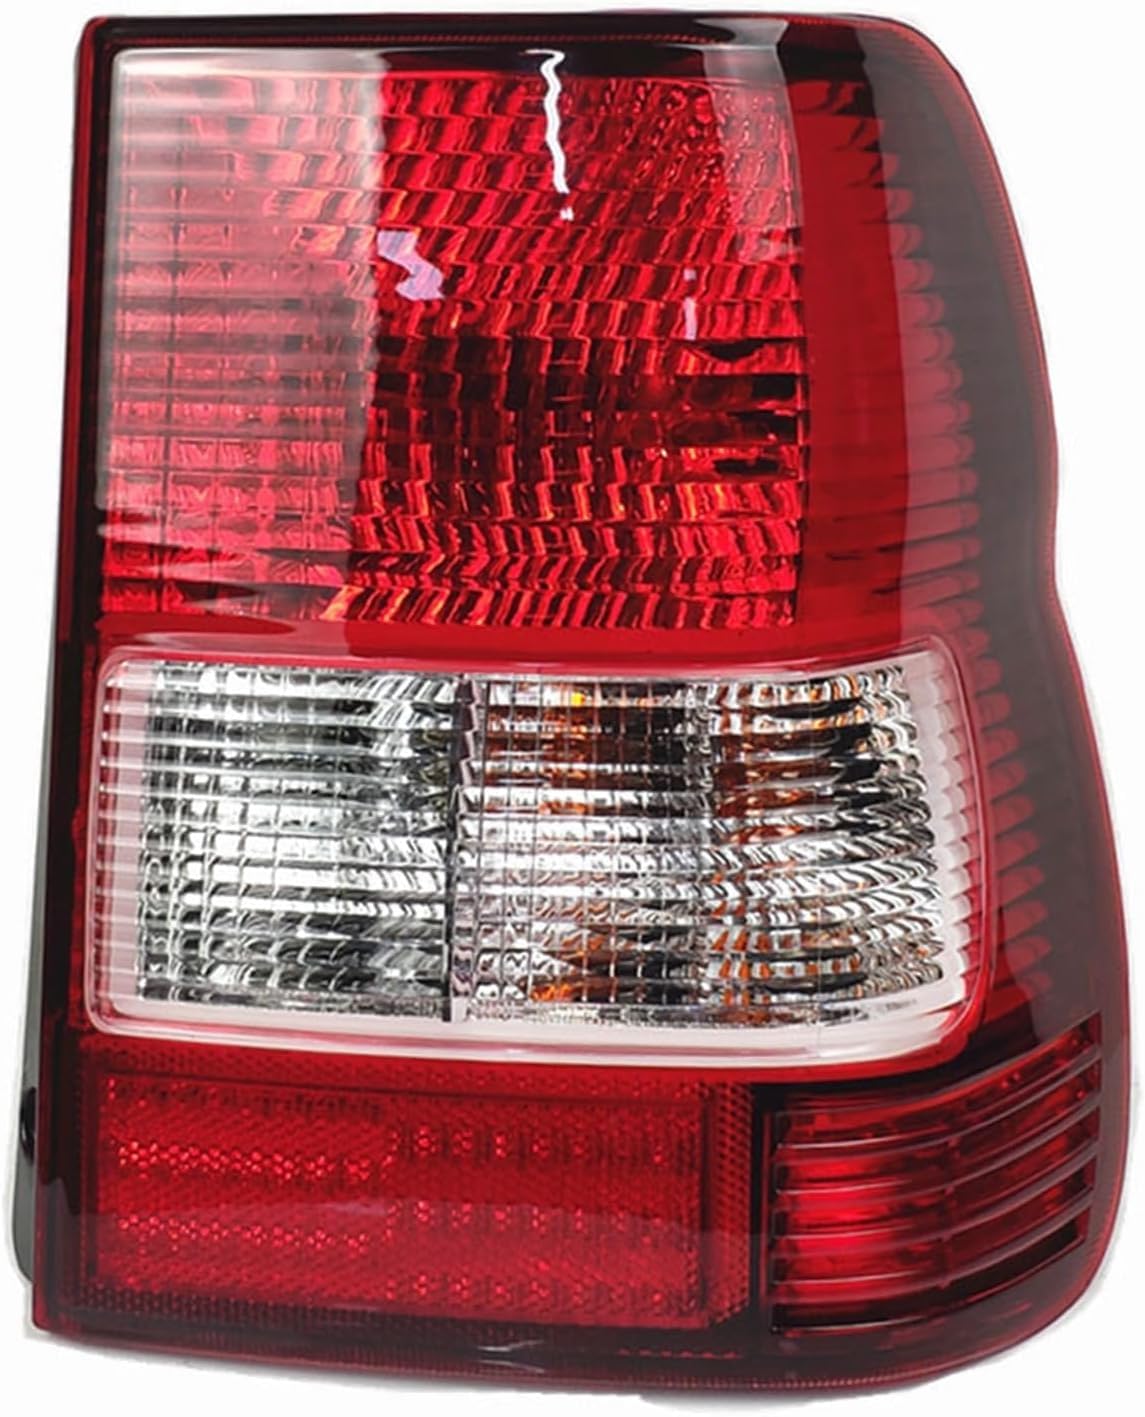 QDFGNKBAI Auto Rücklicht-Komplettsets für Mitsubishi Pajero Montero IO 1998-2007, Rückleuchten Montage Bremslicht Blinker Links Rechts Ersatz Zubehör,A/Right Side von QDFGNKBAI